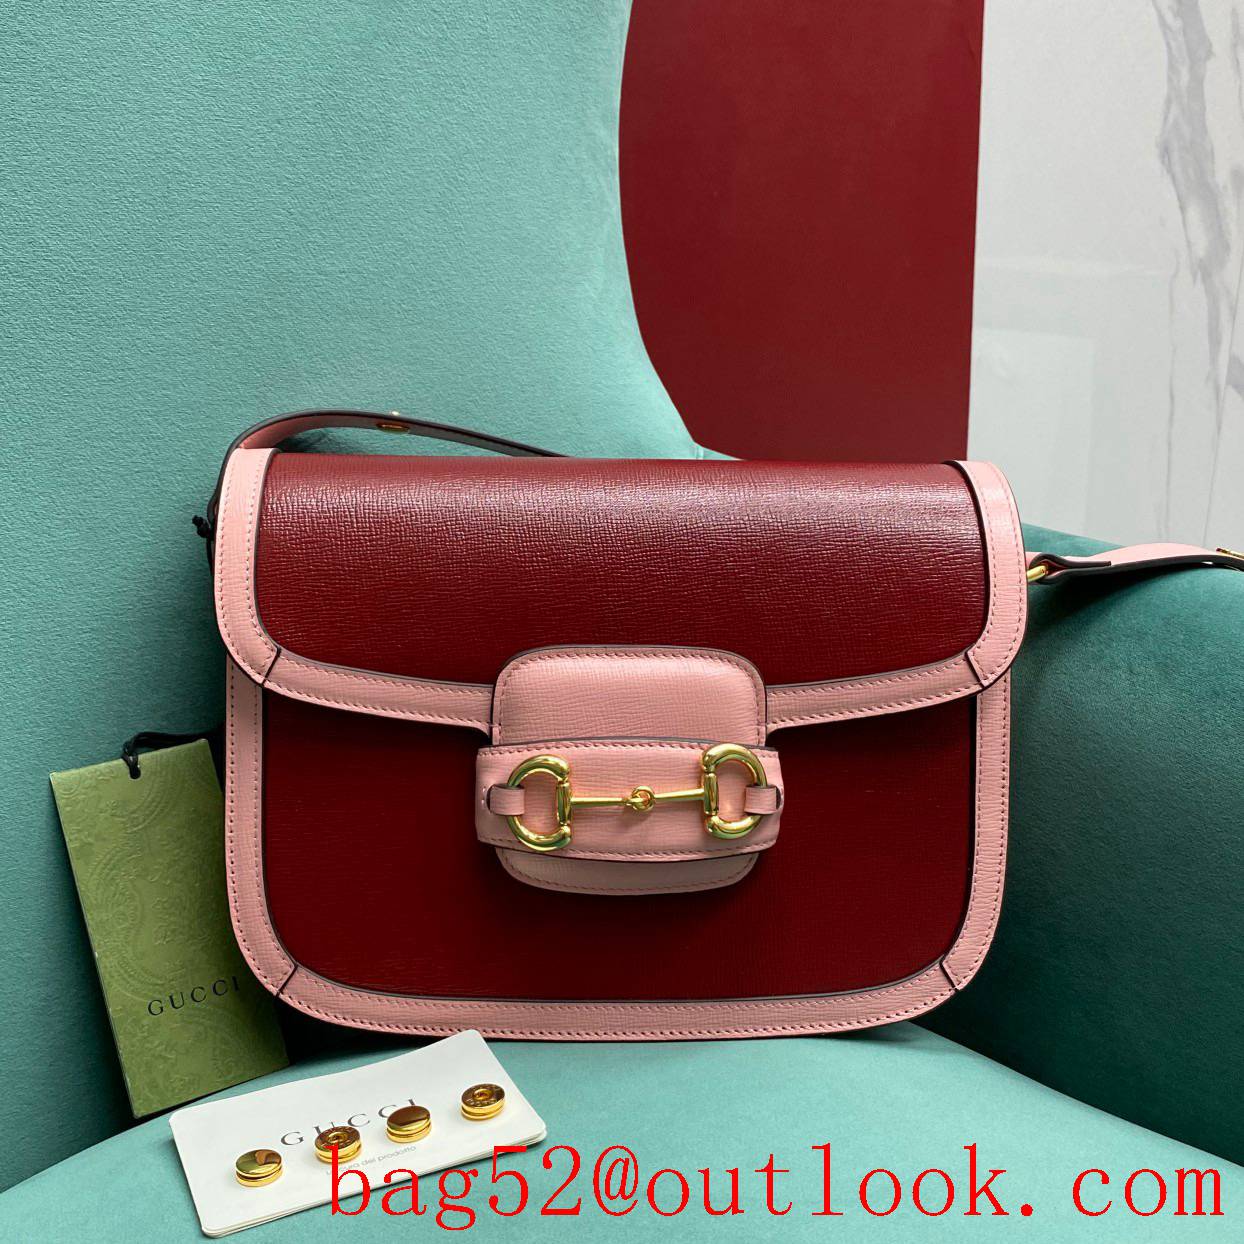 Gucci 1955 Full Leather Saddle rose red shoulder handbag